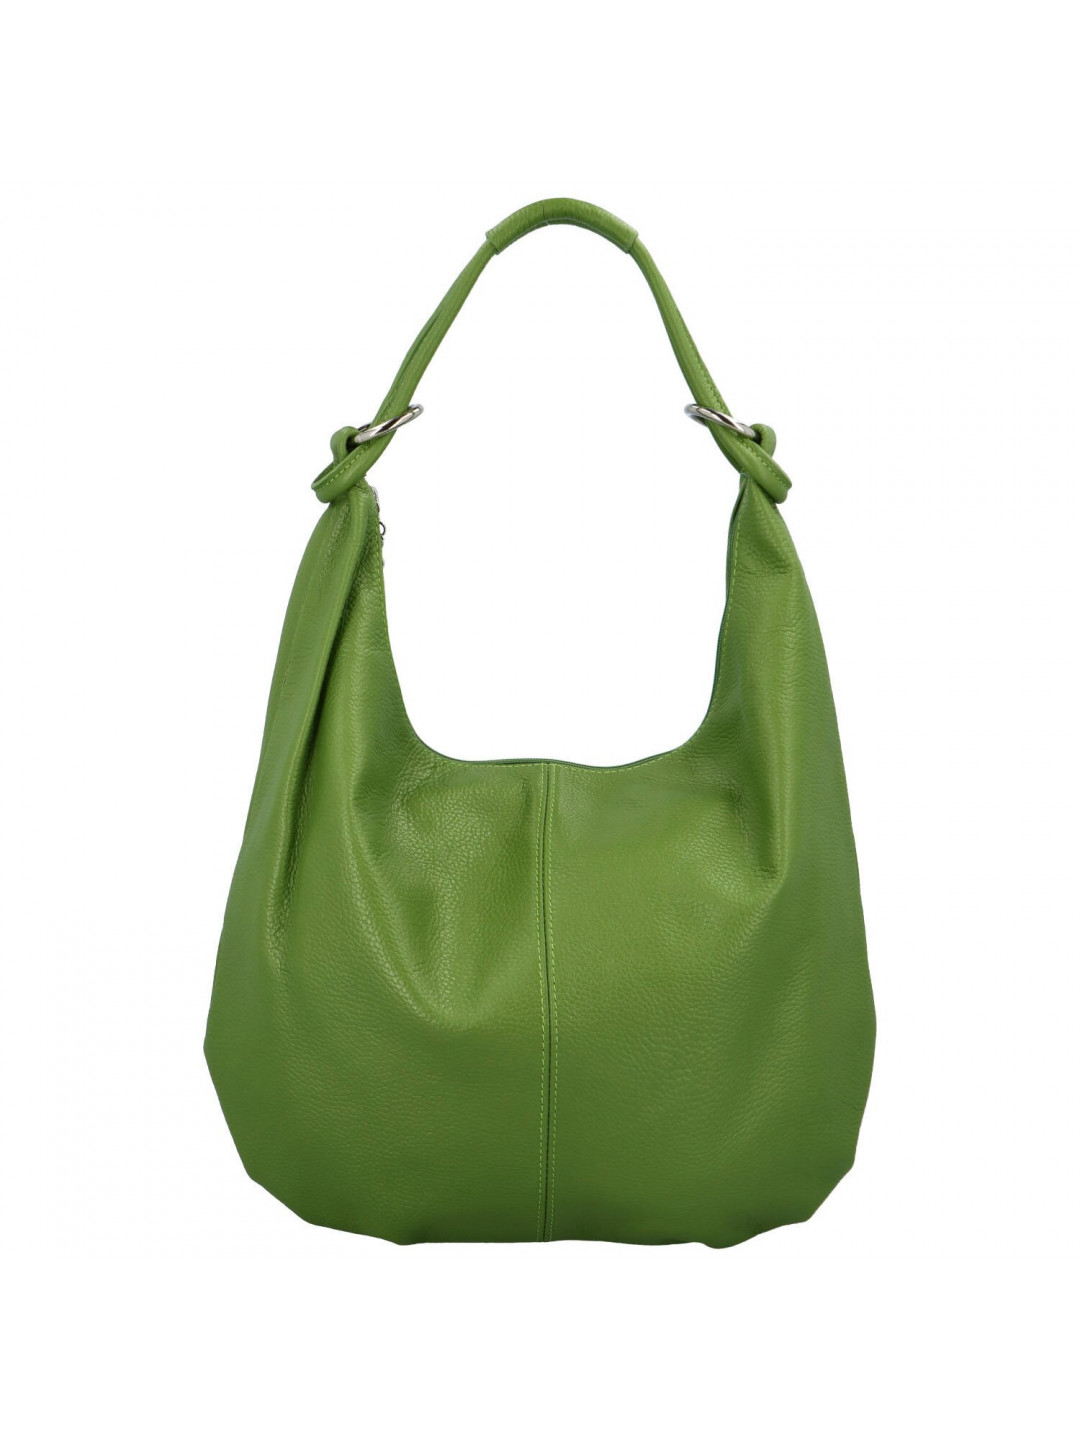 Dámská kožená kabelka přes rameno zelená – Delami Avera